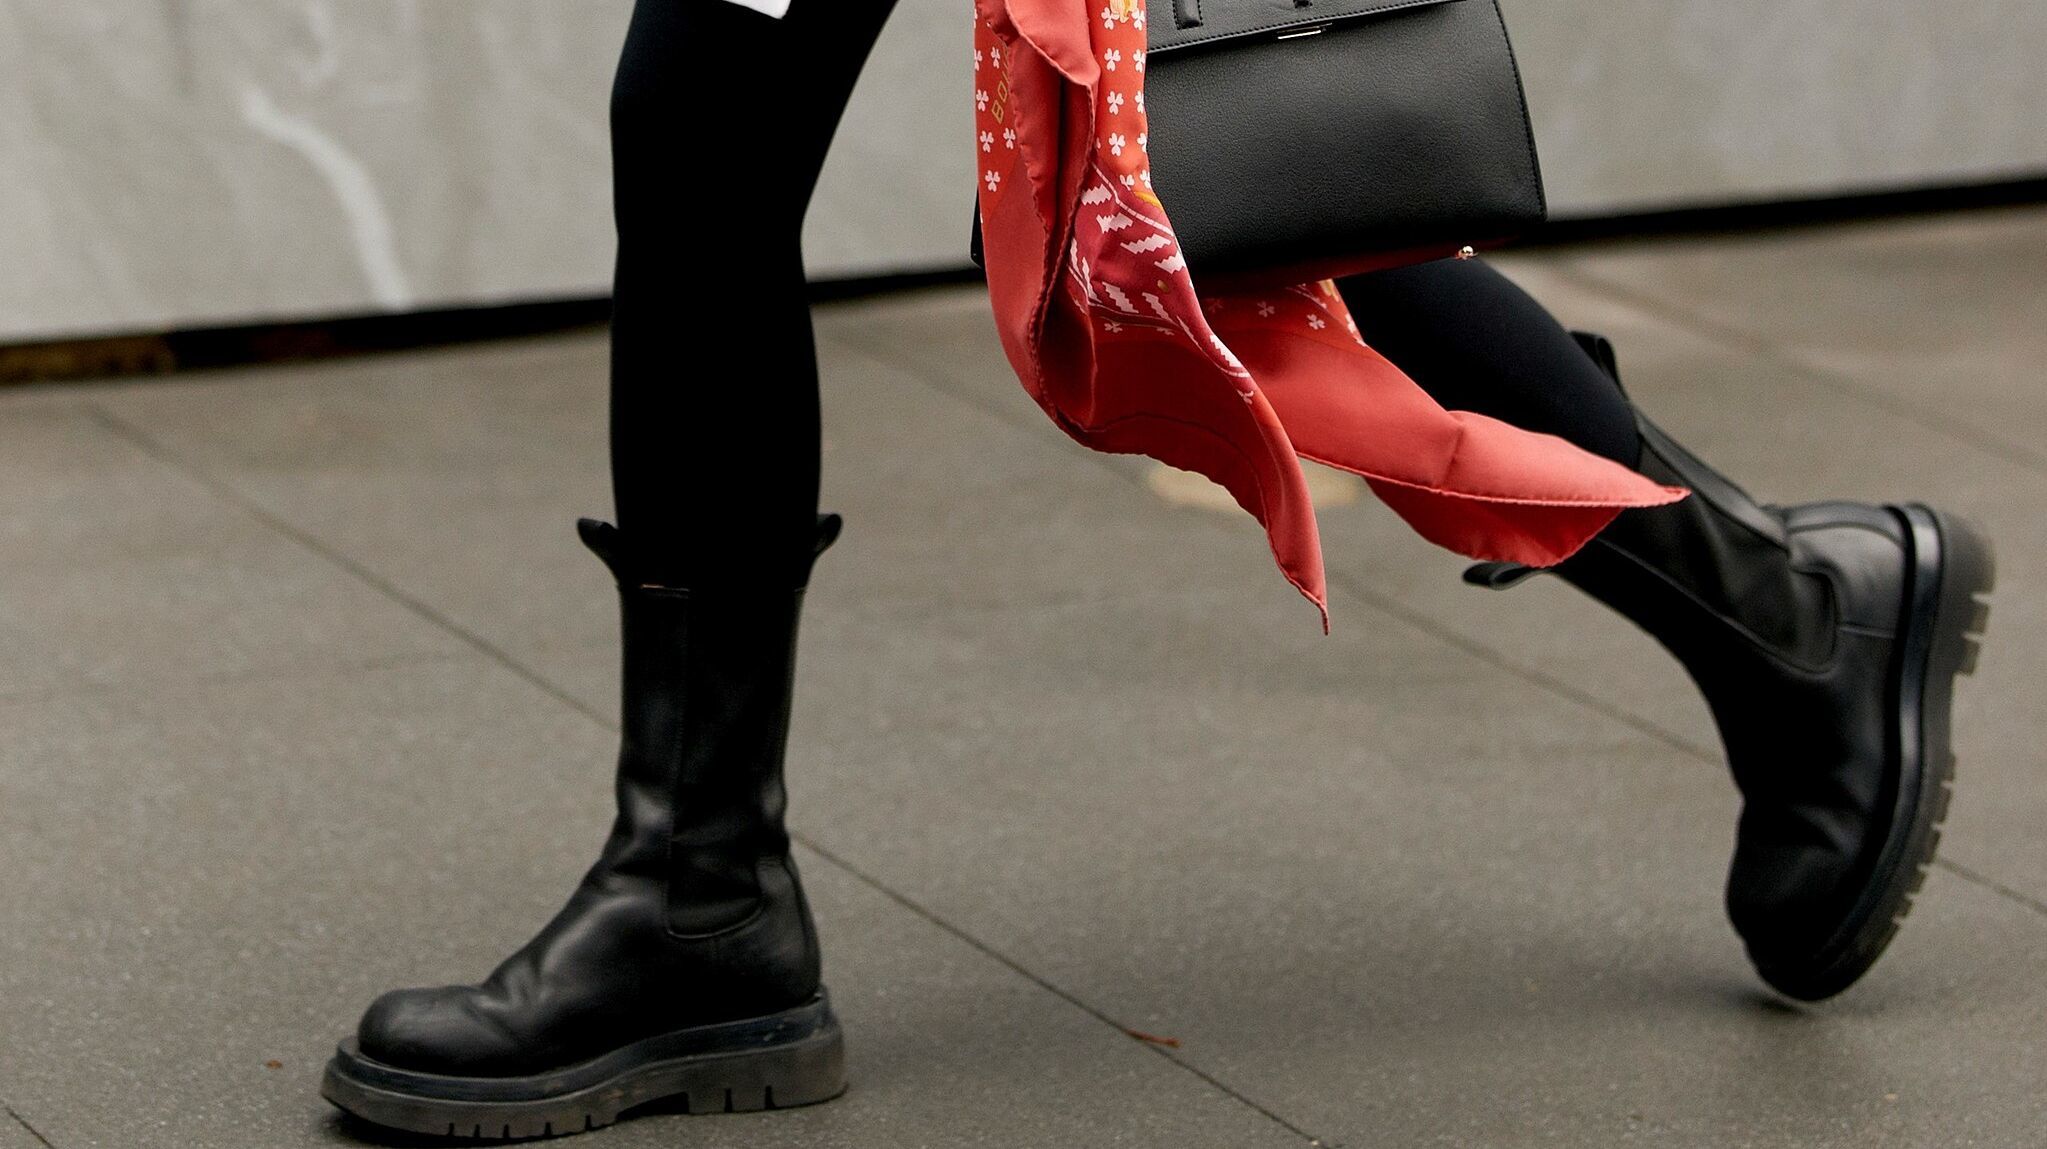 Sara Carbonero y las botas con cordones de Primark sus looks más casuales | Telva.com